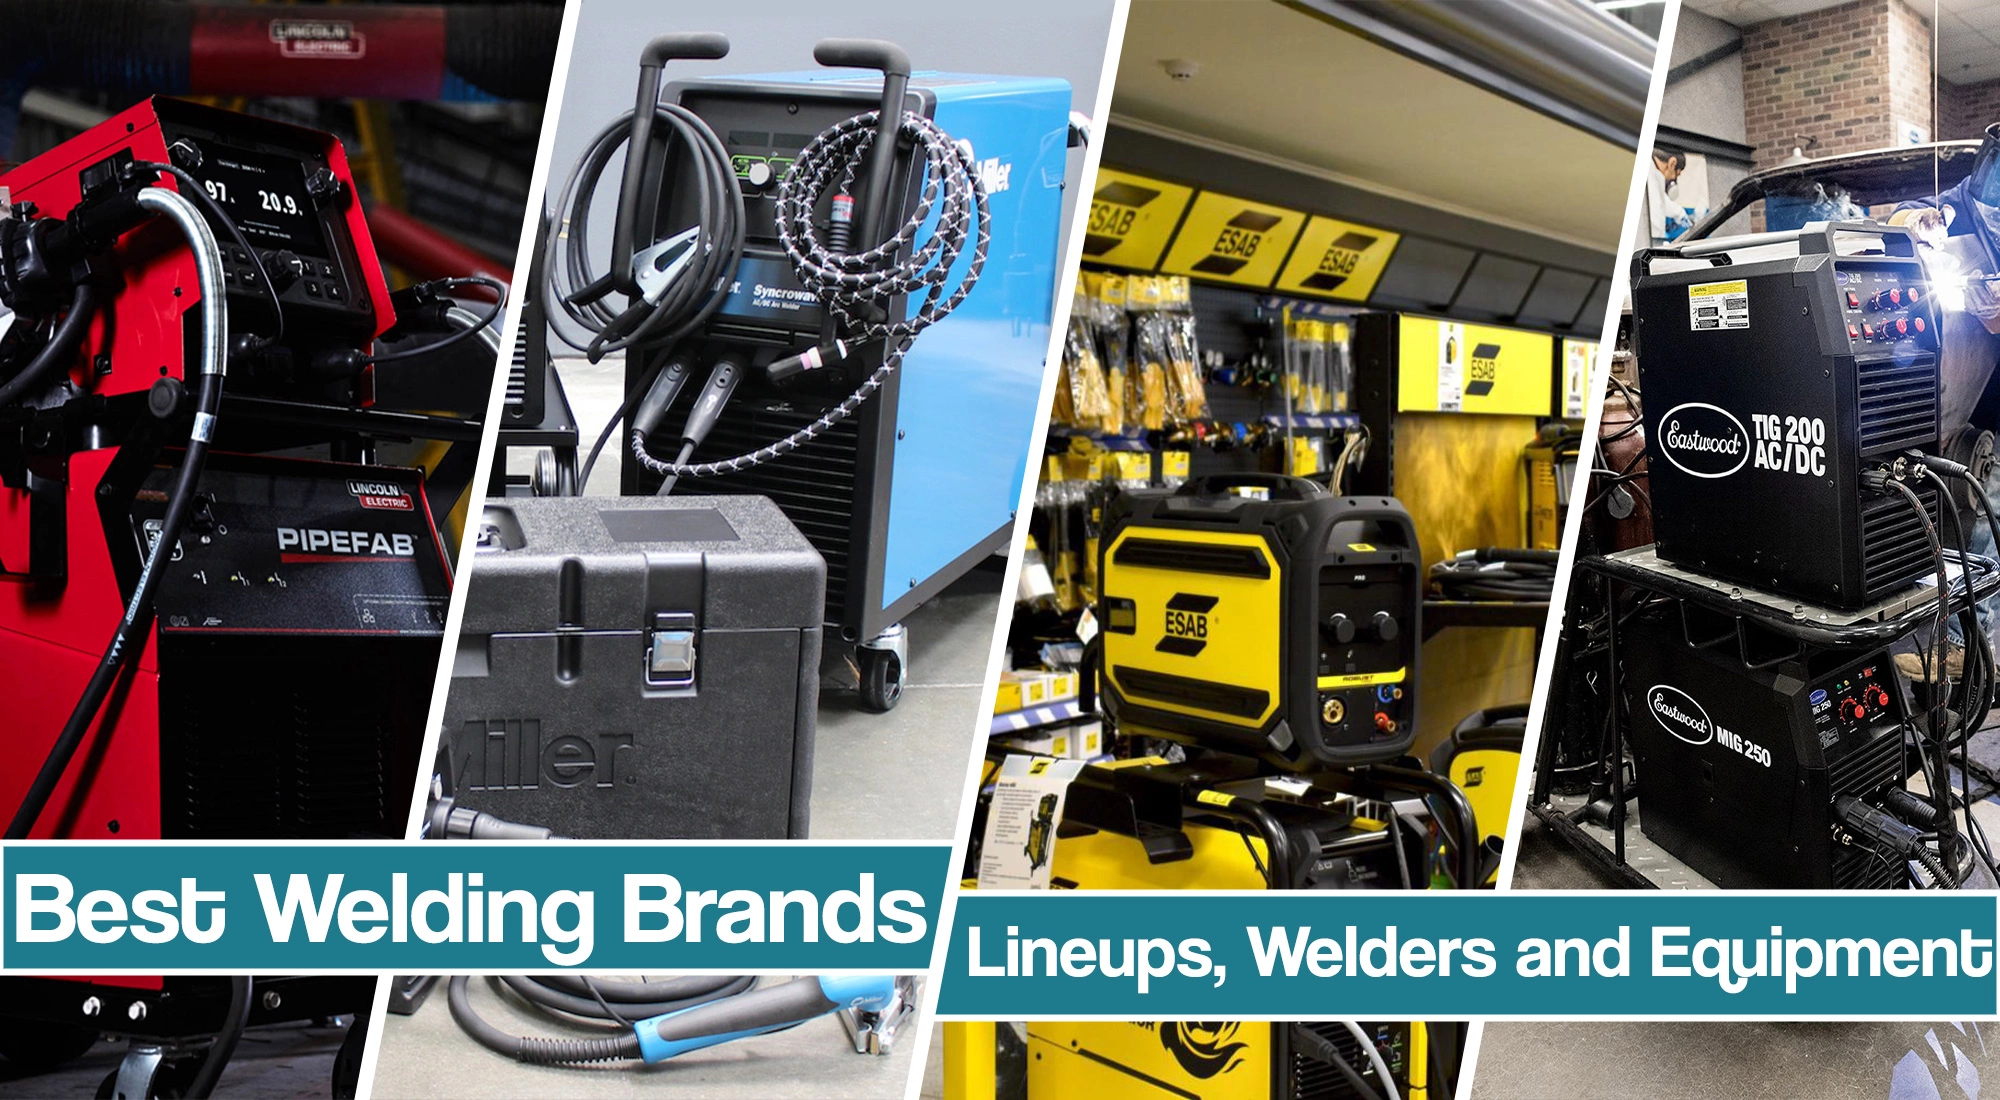 Best Welding Brands – Hobby & Industrial Manufacturers & Their Welding Equipment